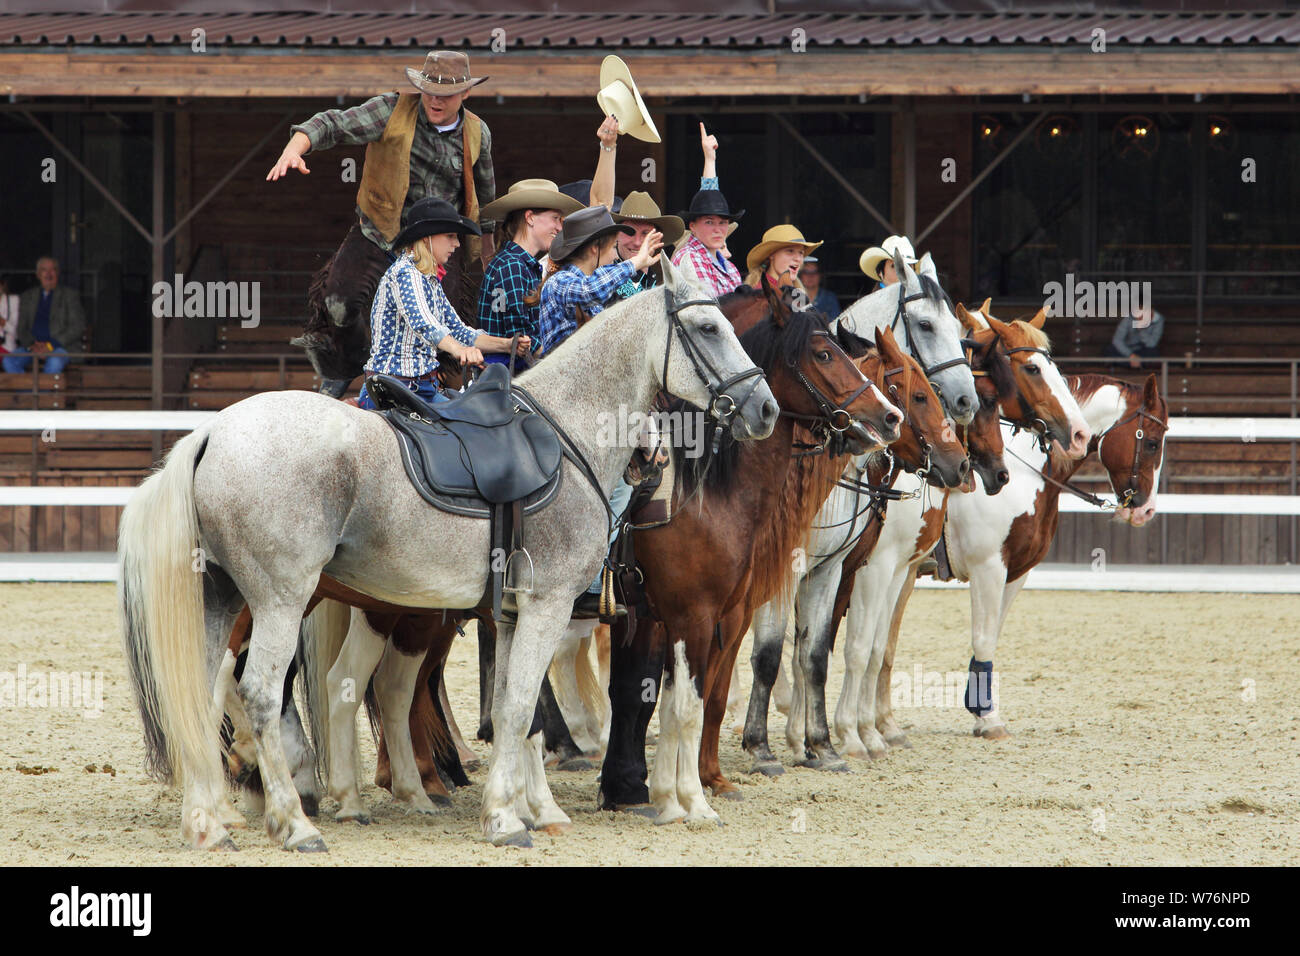 Region Moskau, Russland, Juli 19-21, 2019, II International Equestrian Festival' Ivanovo Feld 'Cowgirl und Cowboy im Barrel Racing Wettbewerb Stockfoto